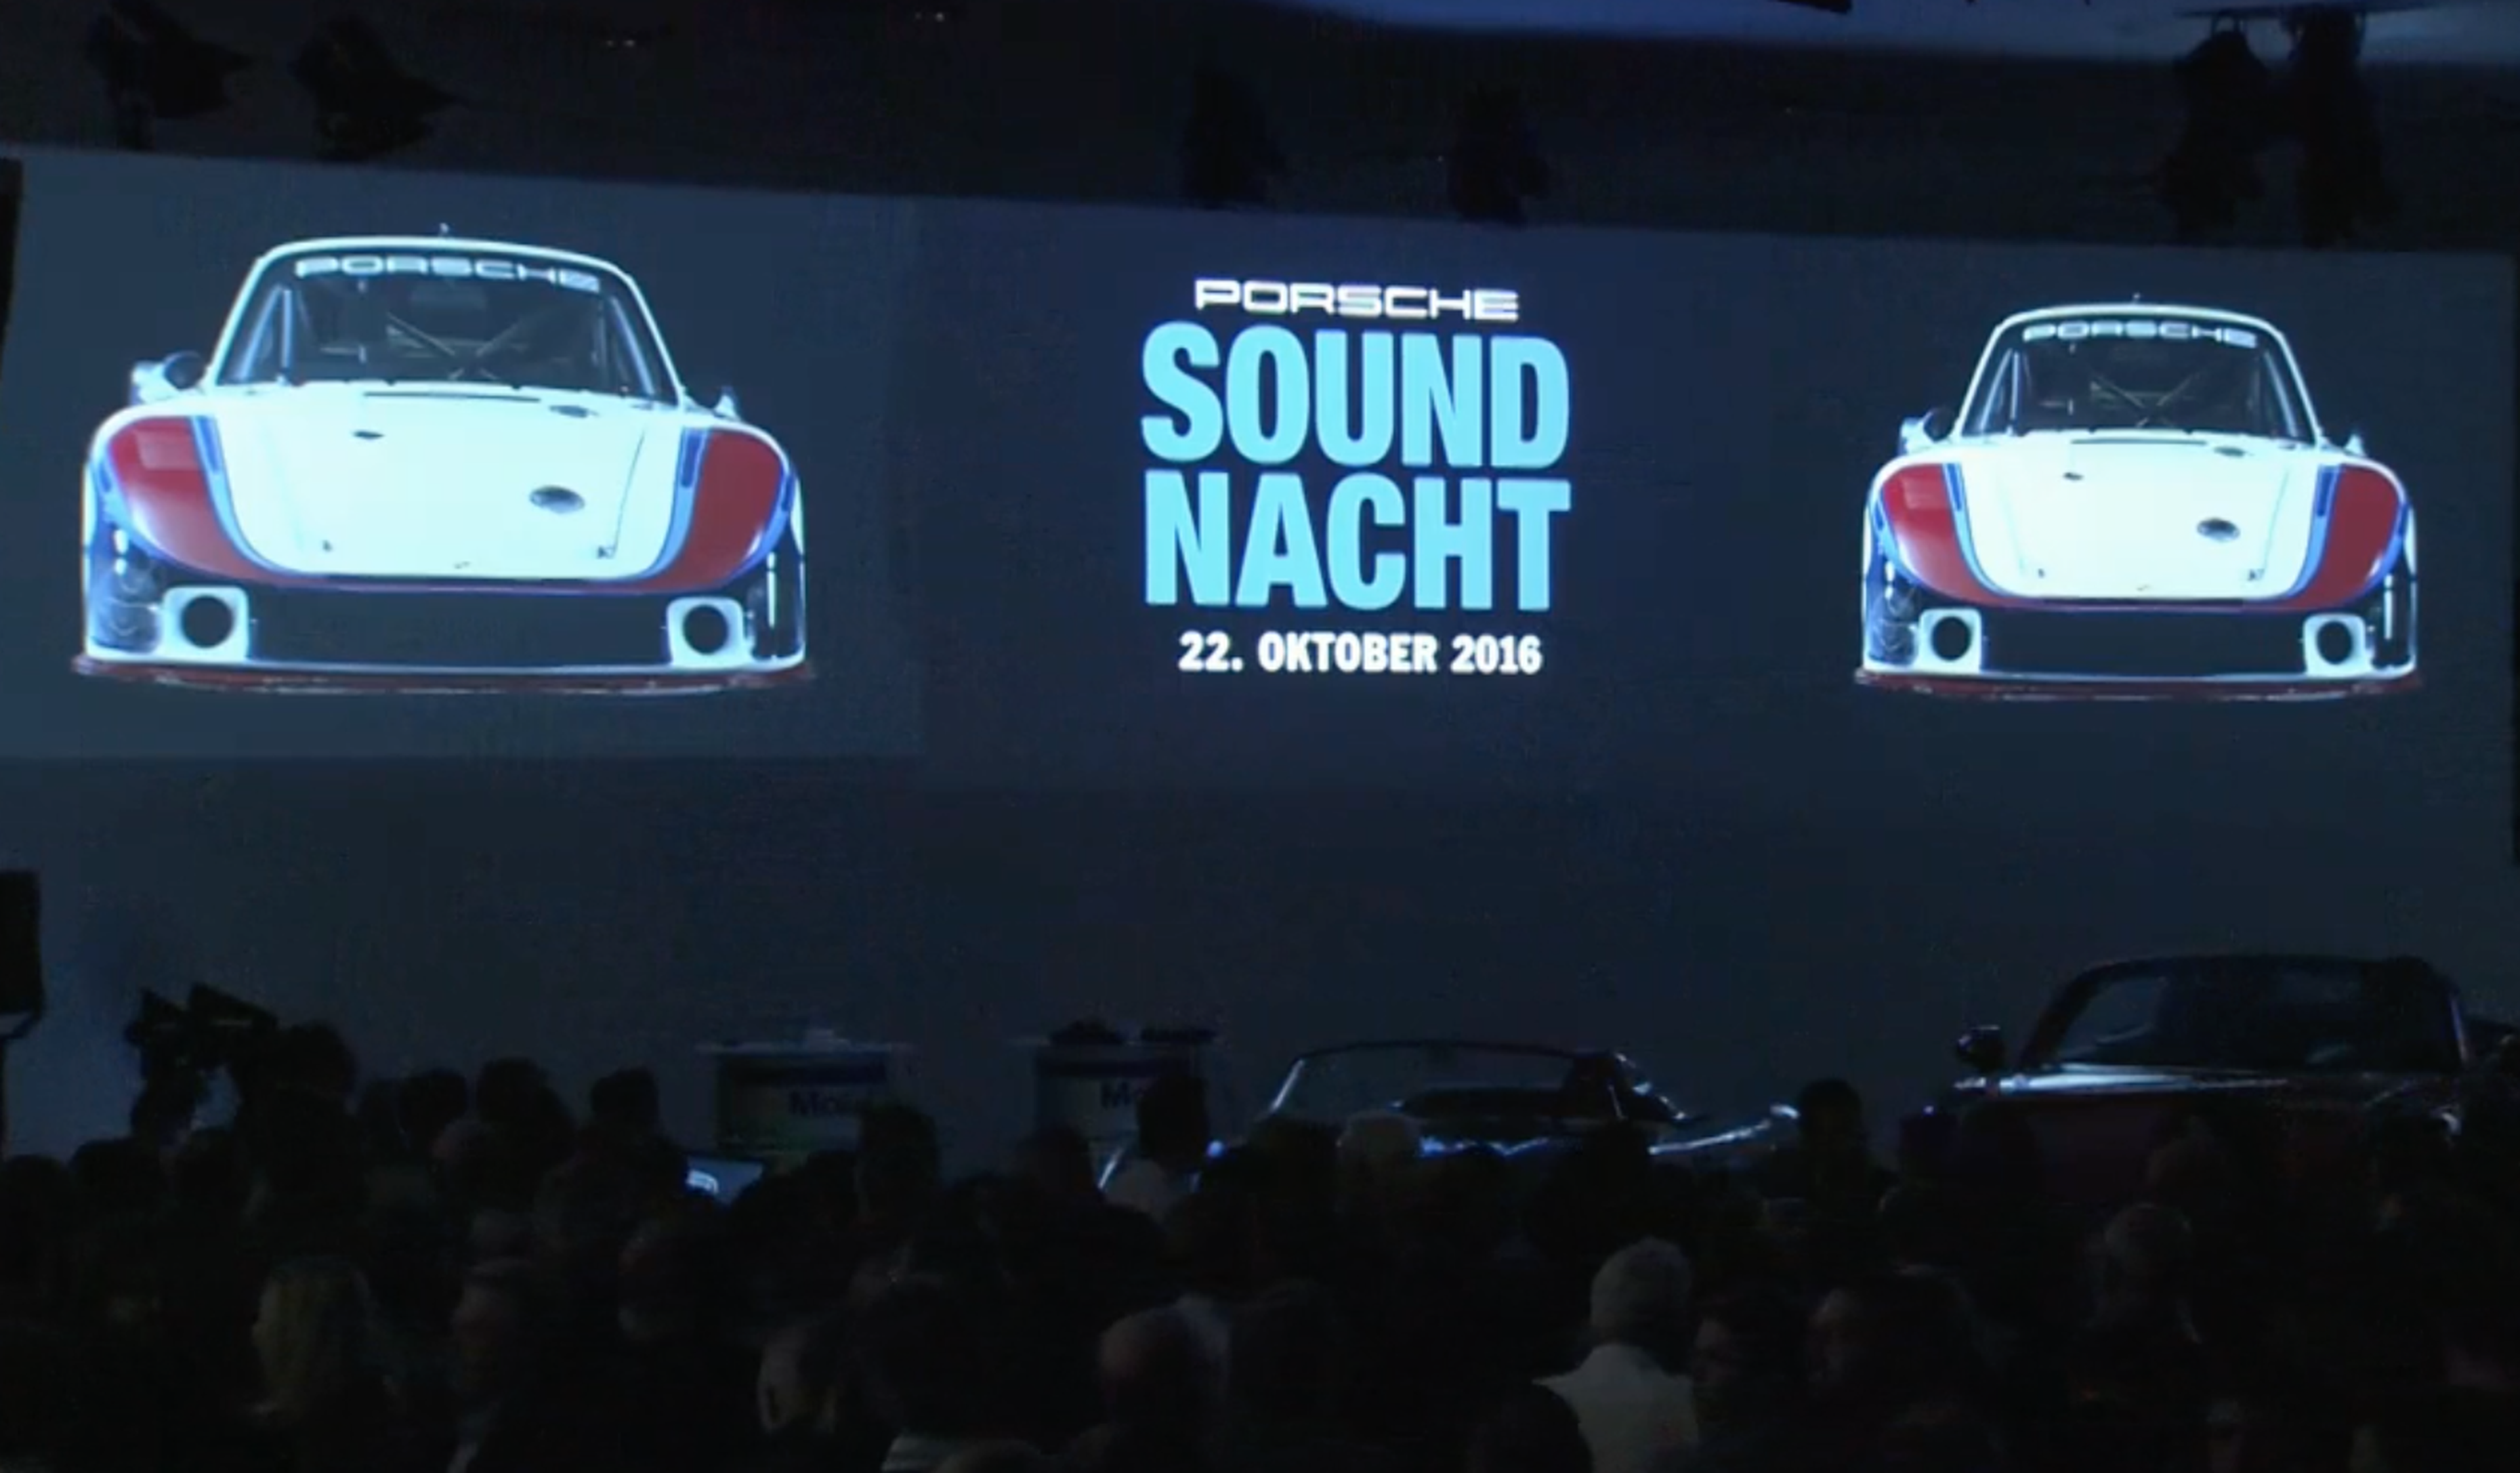 Porsche Sound-Nacht 2016: ¡música, maestro!